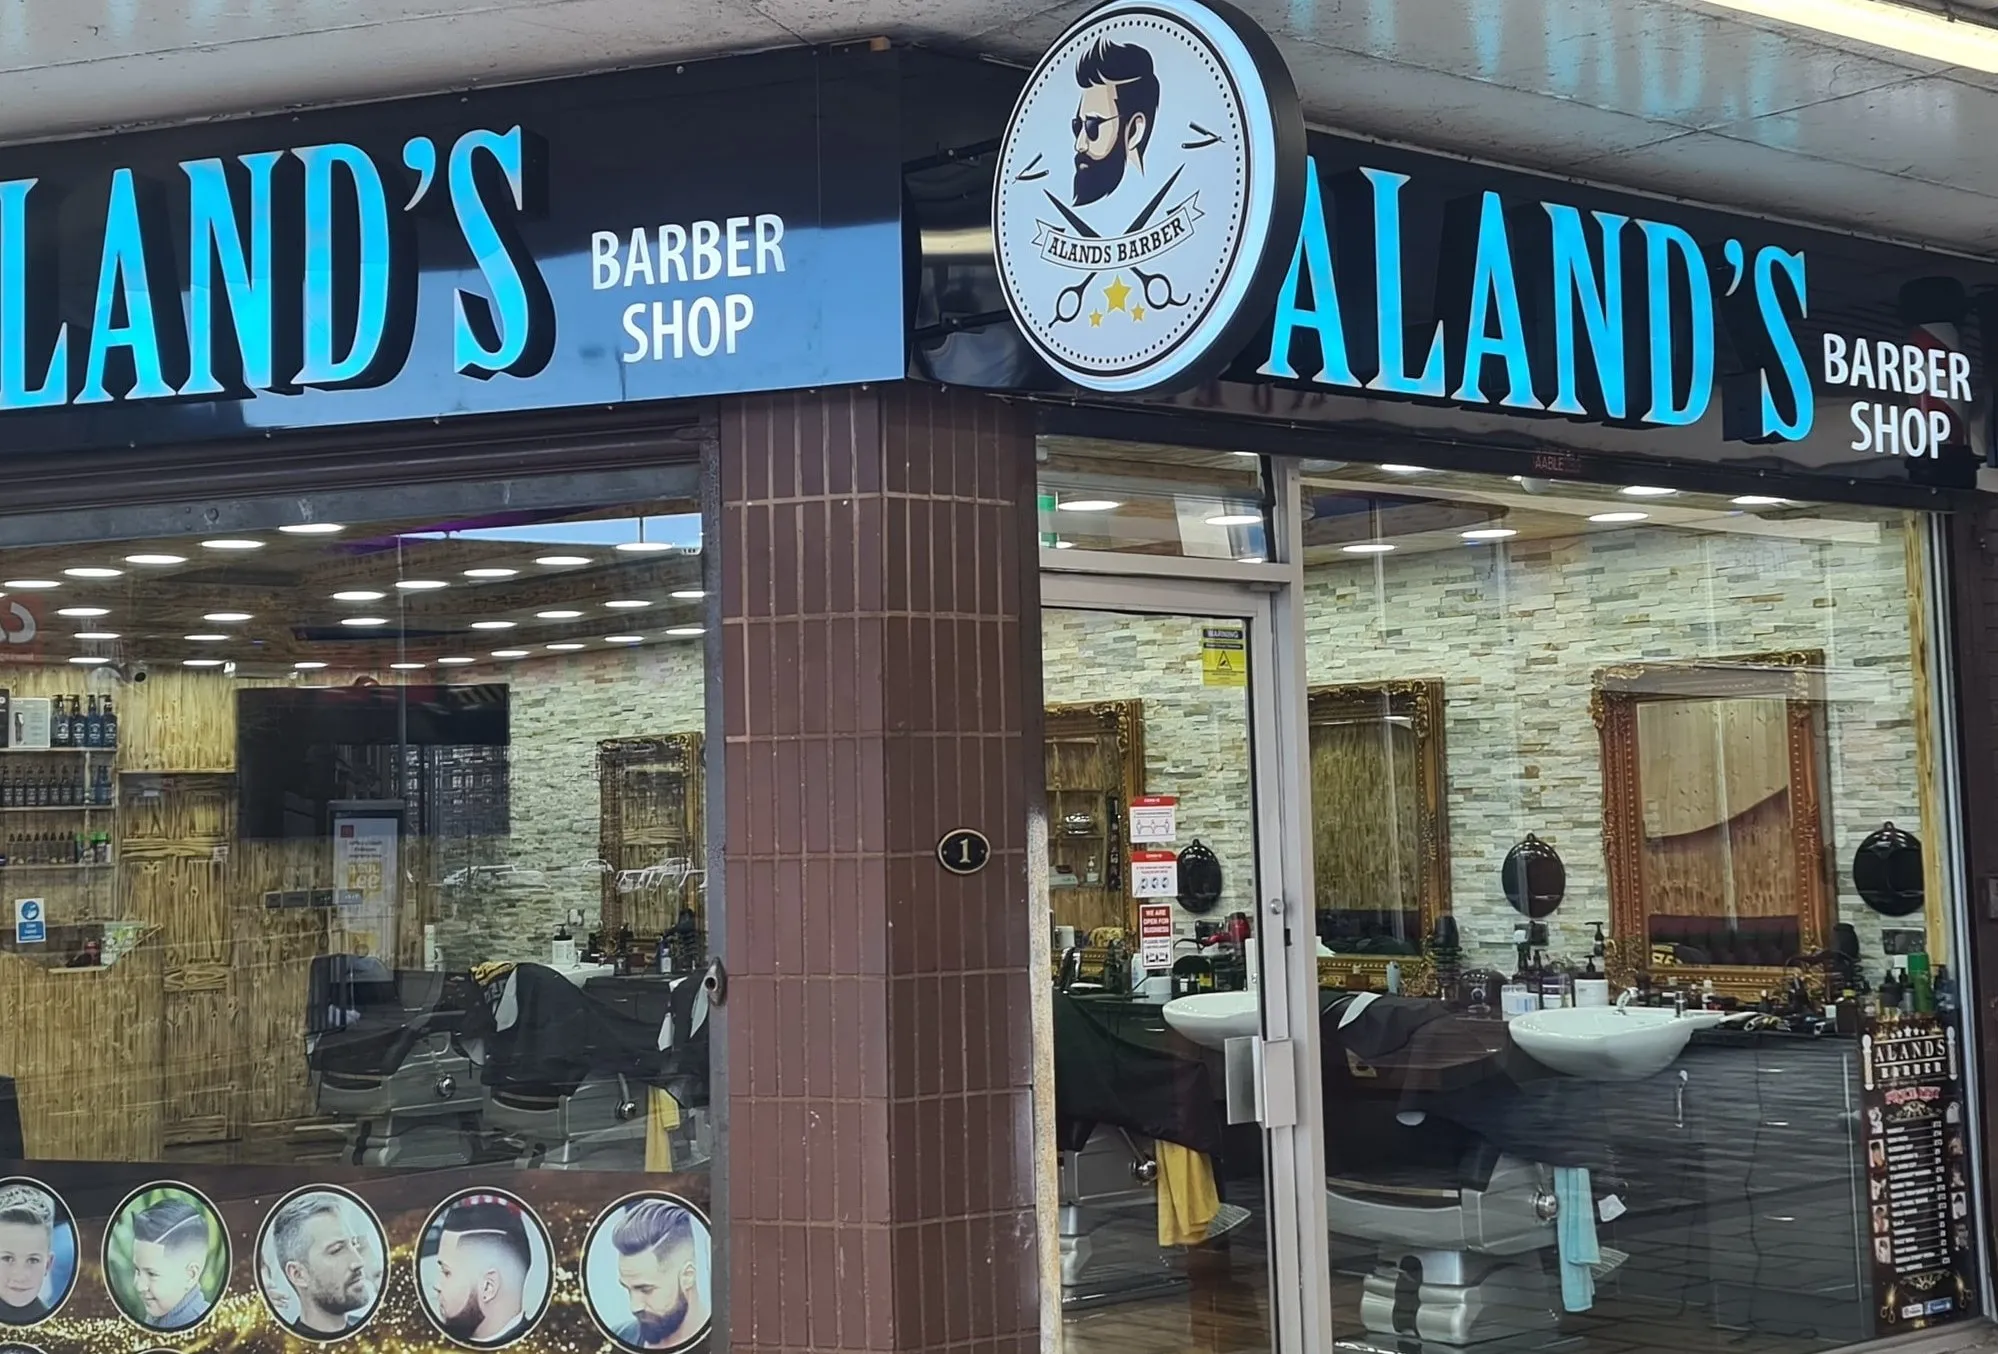 Aland's Barber Shop